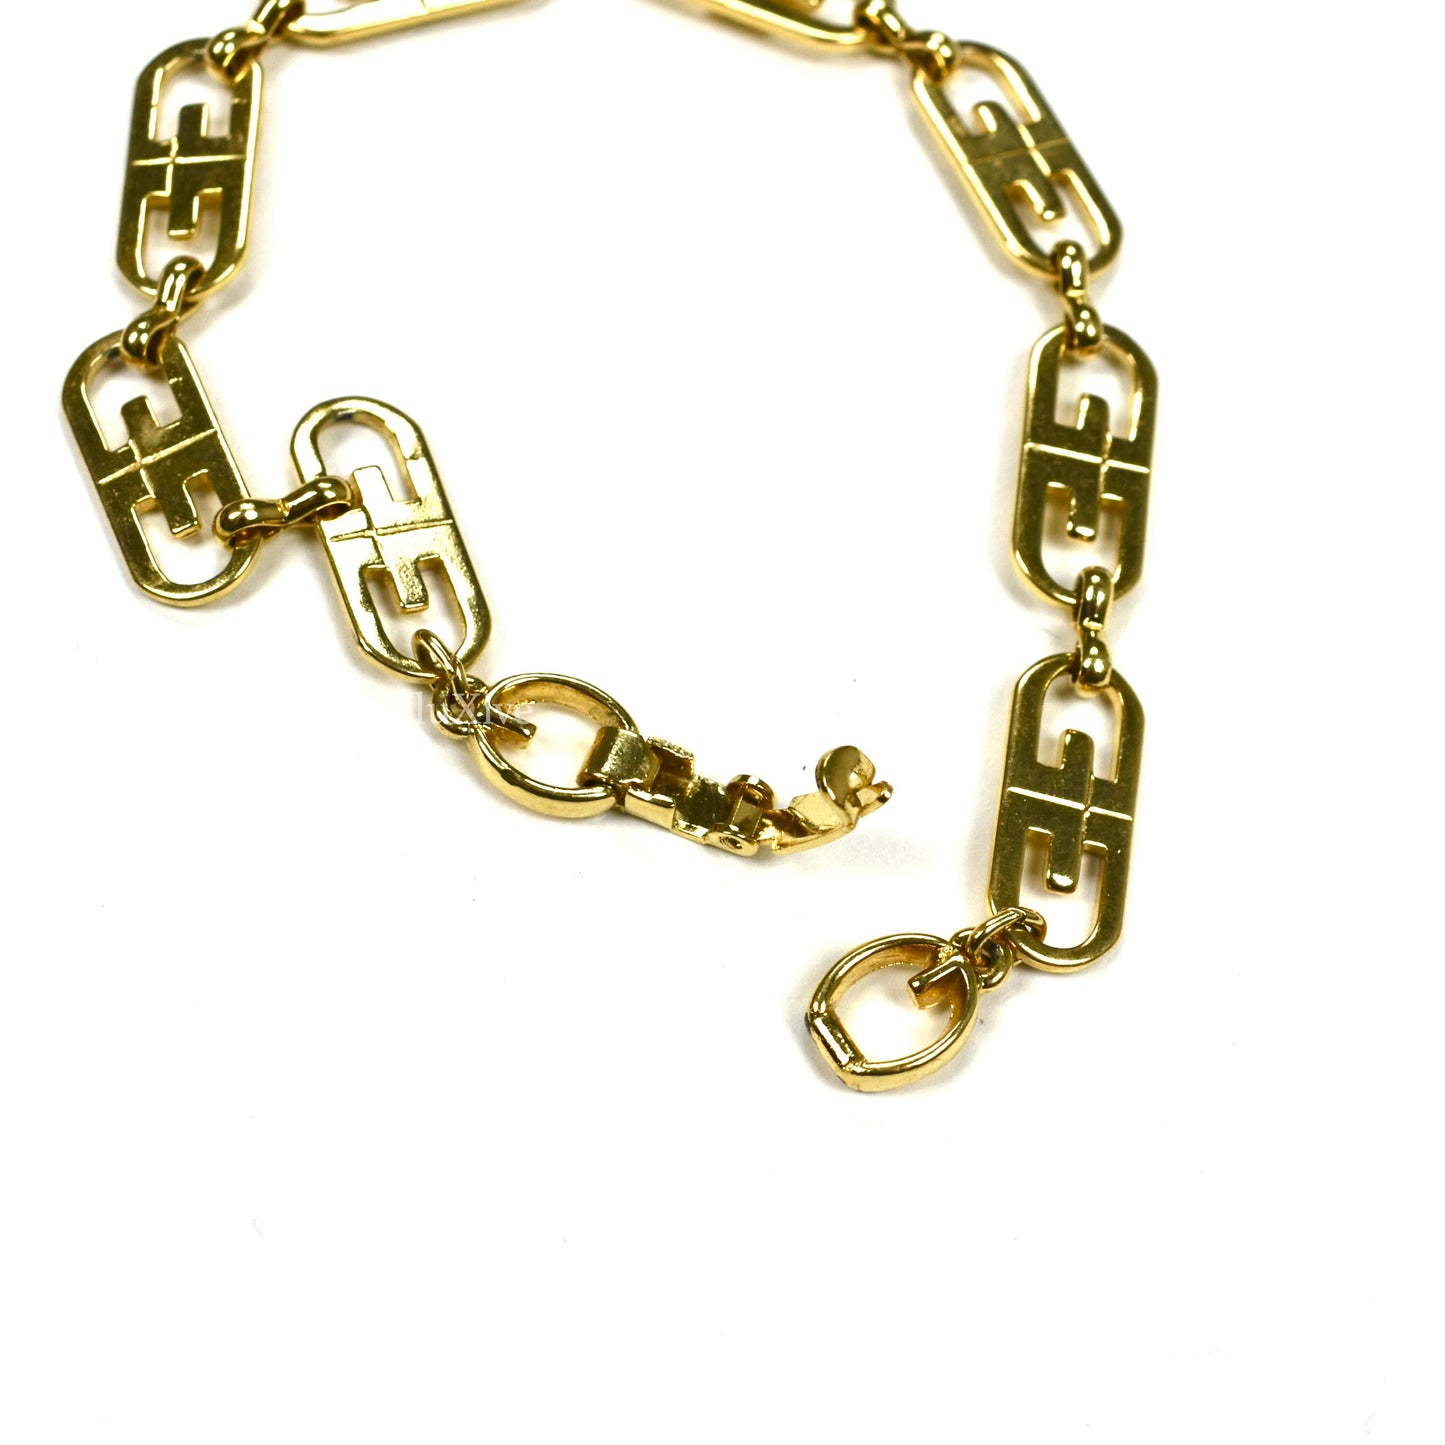 Givenchy - Gold Oval GG Logo Bracelet